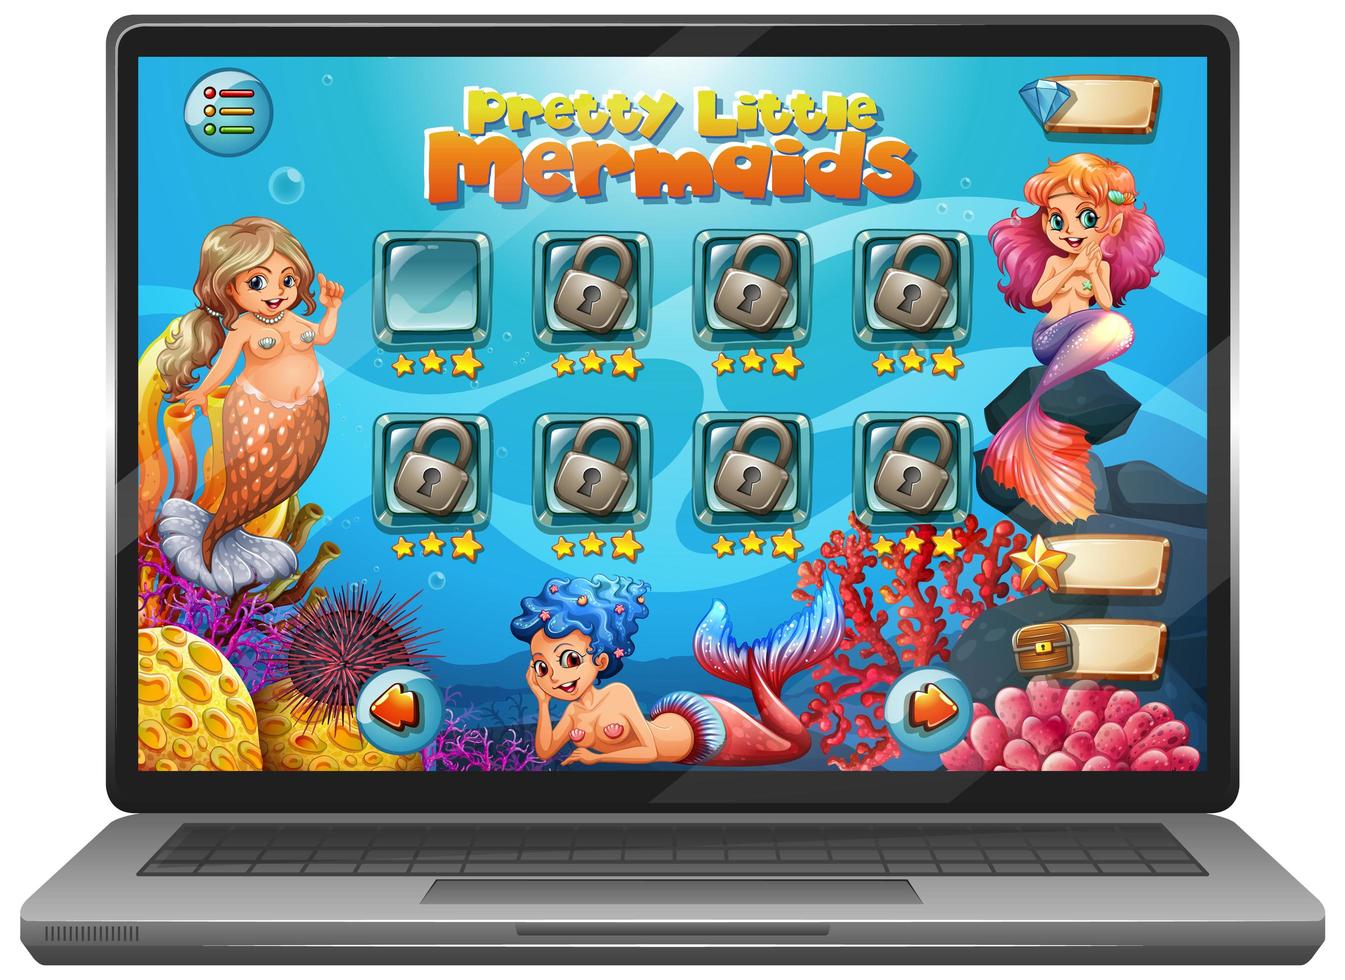 Mermaid game on laptop screen vector